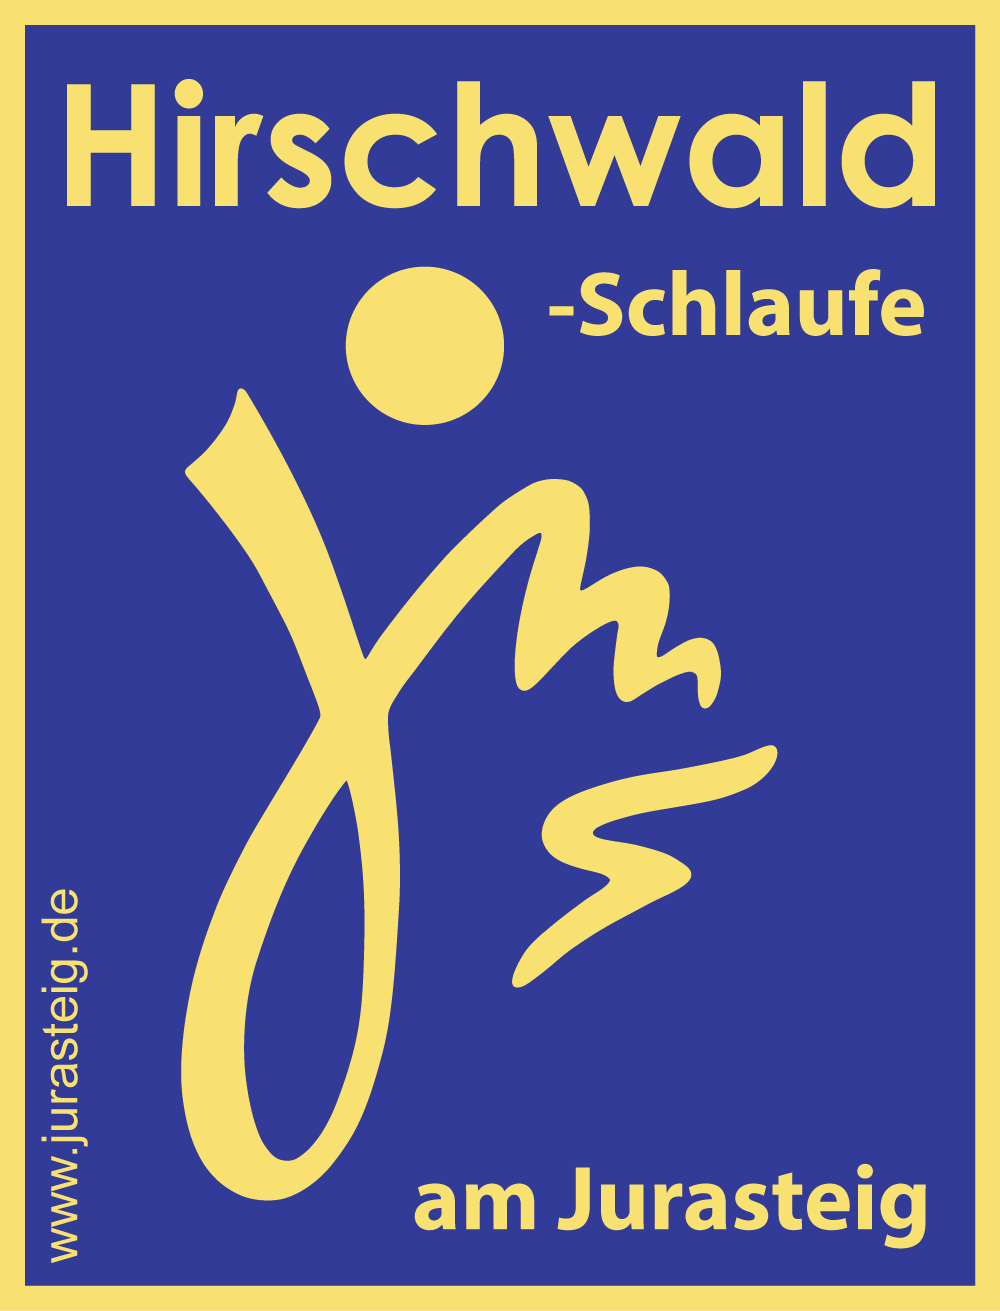 Markierungszeichen Hirschwald-Schlaufe